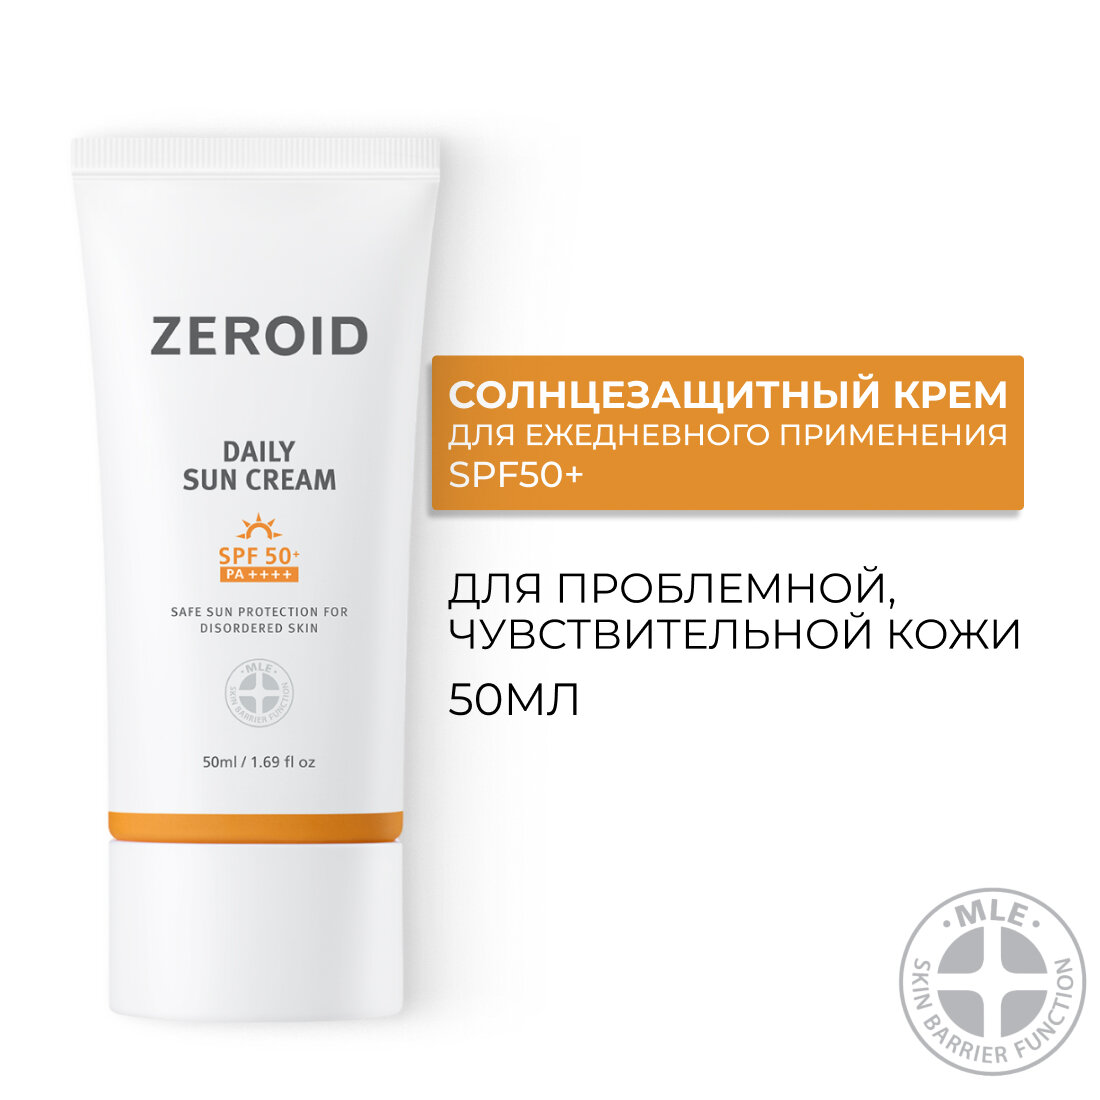 Солнцезащитный крем для кожи SPF50+, 50 мл, ZEROID